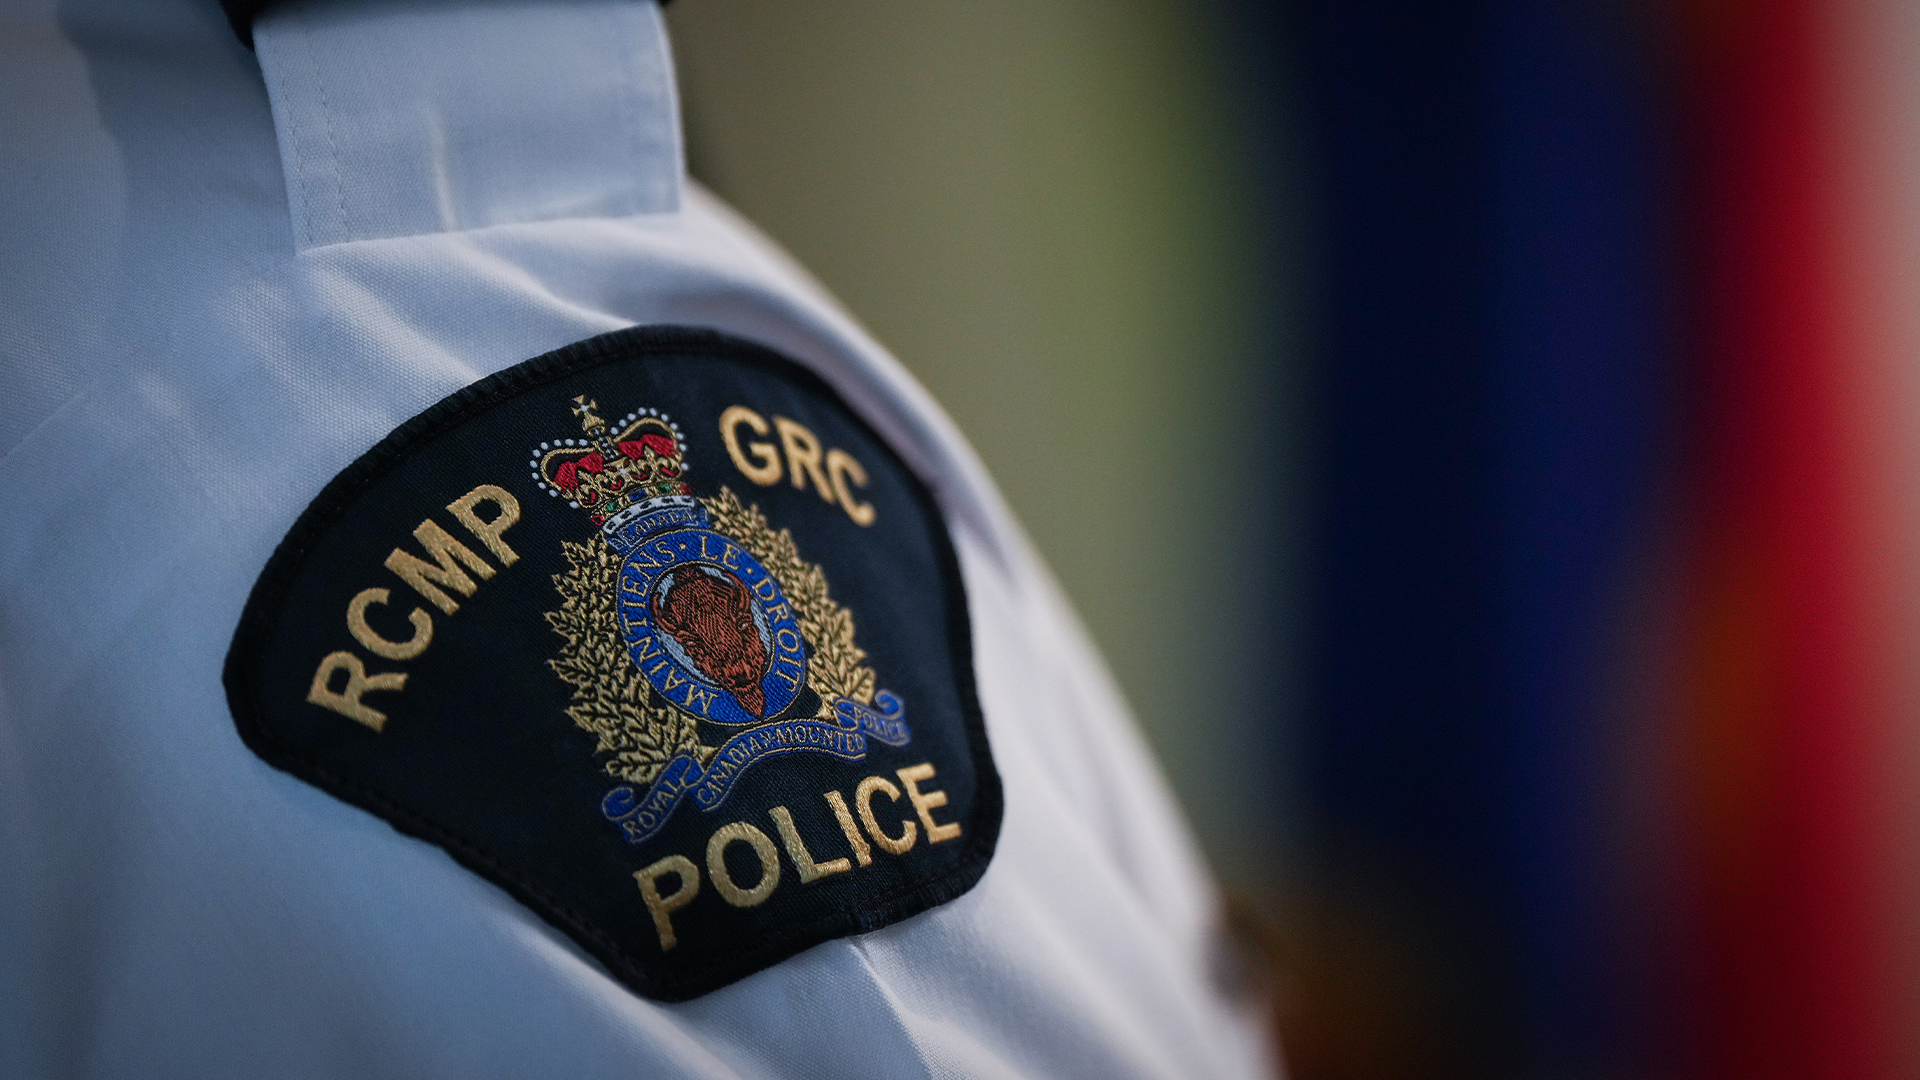 Deux individus de Montréal sont accusés de complot en vue de commettre une infraction aux États-Unis, dévoile mardi la Gendarmerie Royale du Canada (GRC).